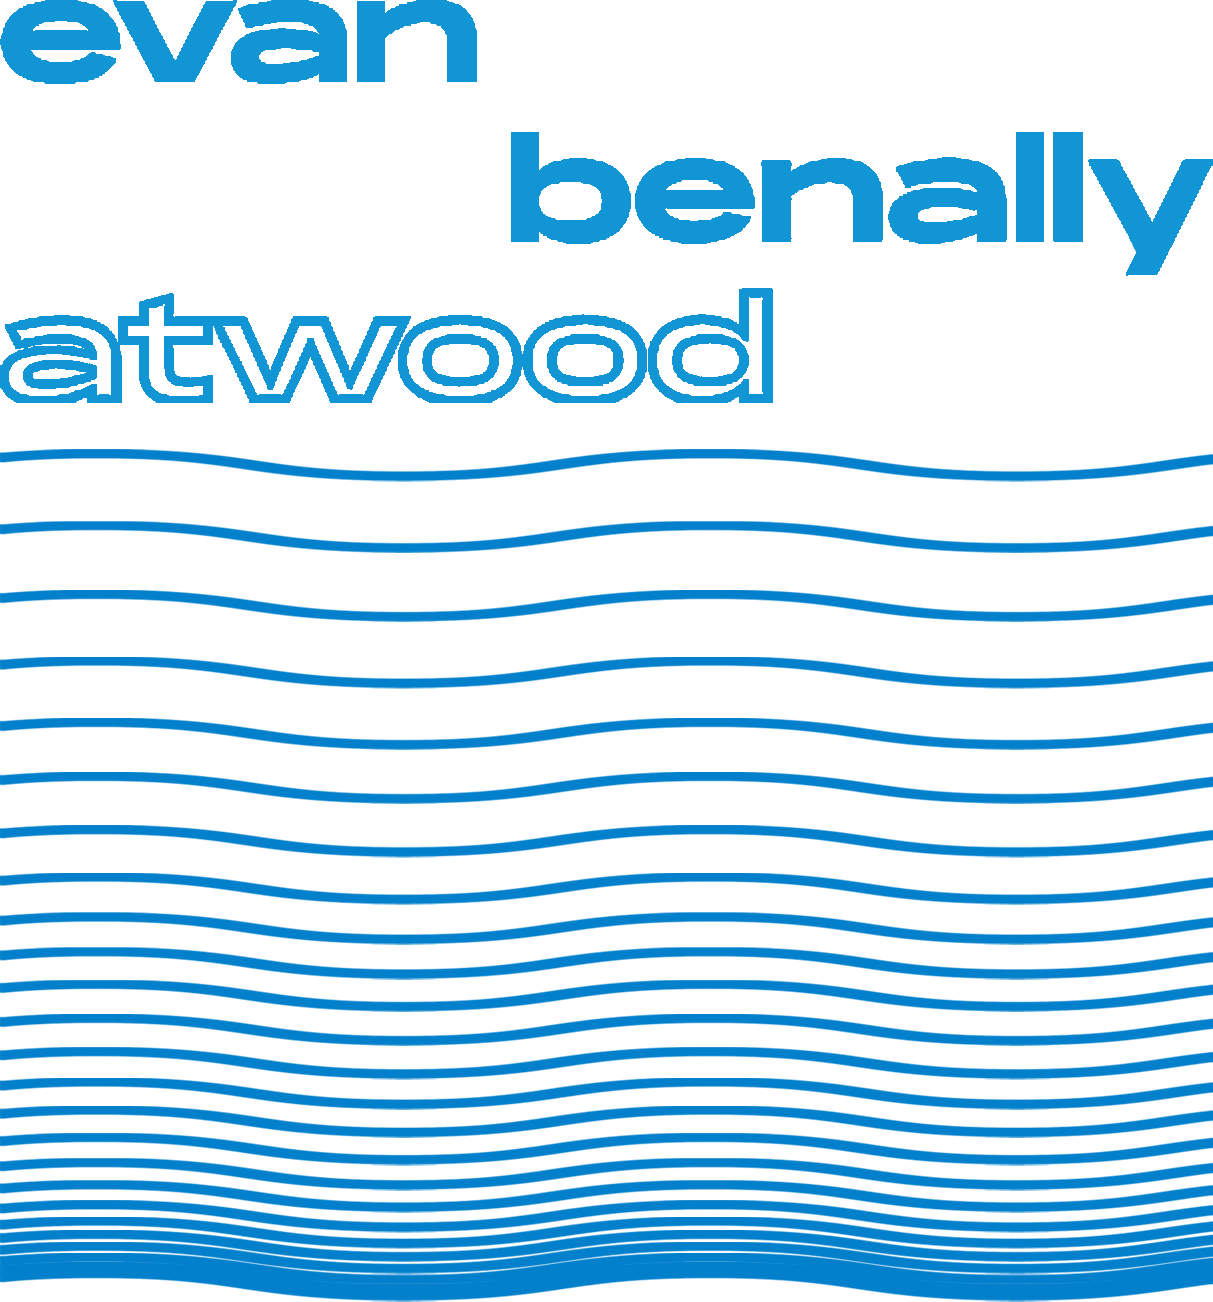 Evan Benally Atwood's Portfolio